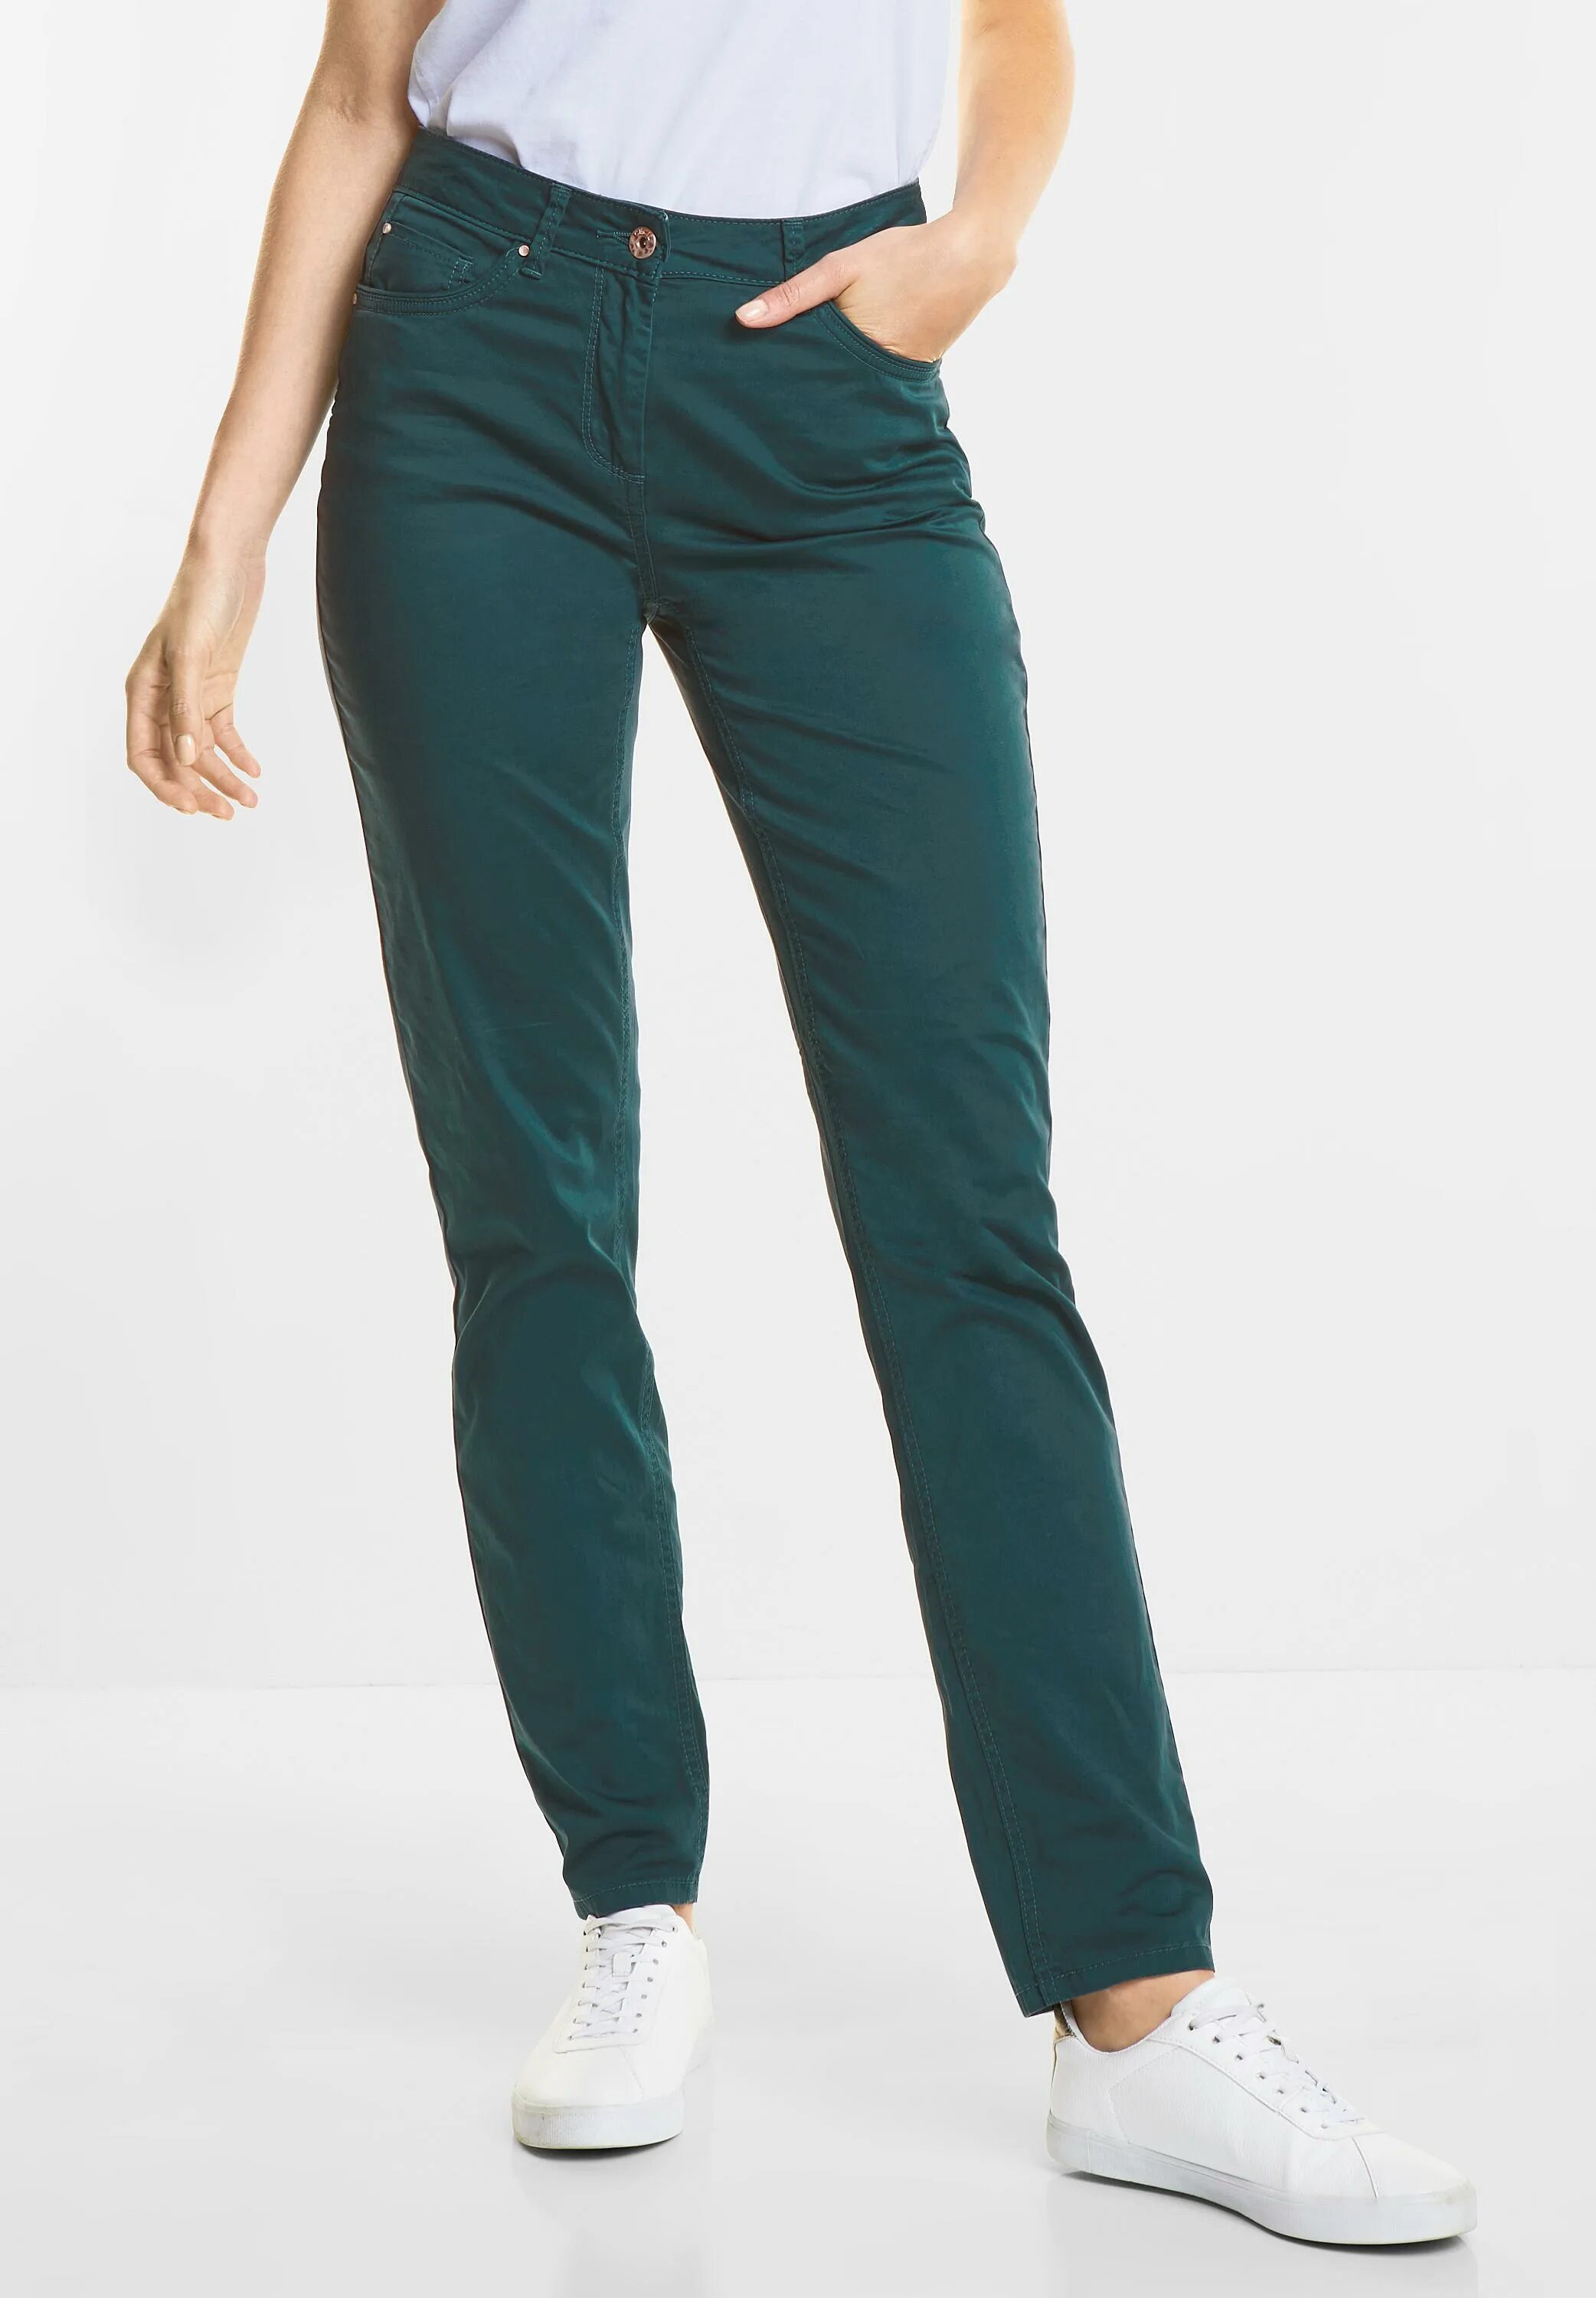 Джинса зеленая купить. Cecil штаны зеленые. Зелёные джинсы женские. Салатовые джинсы.